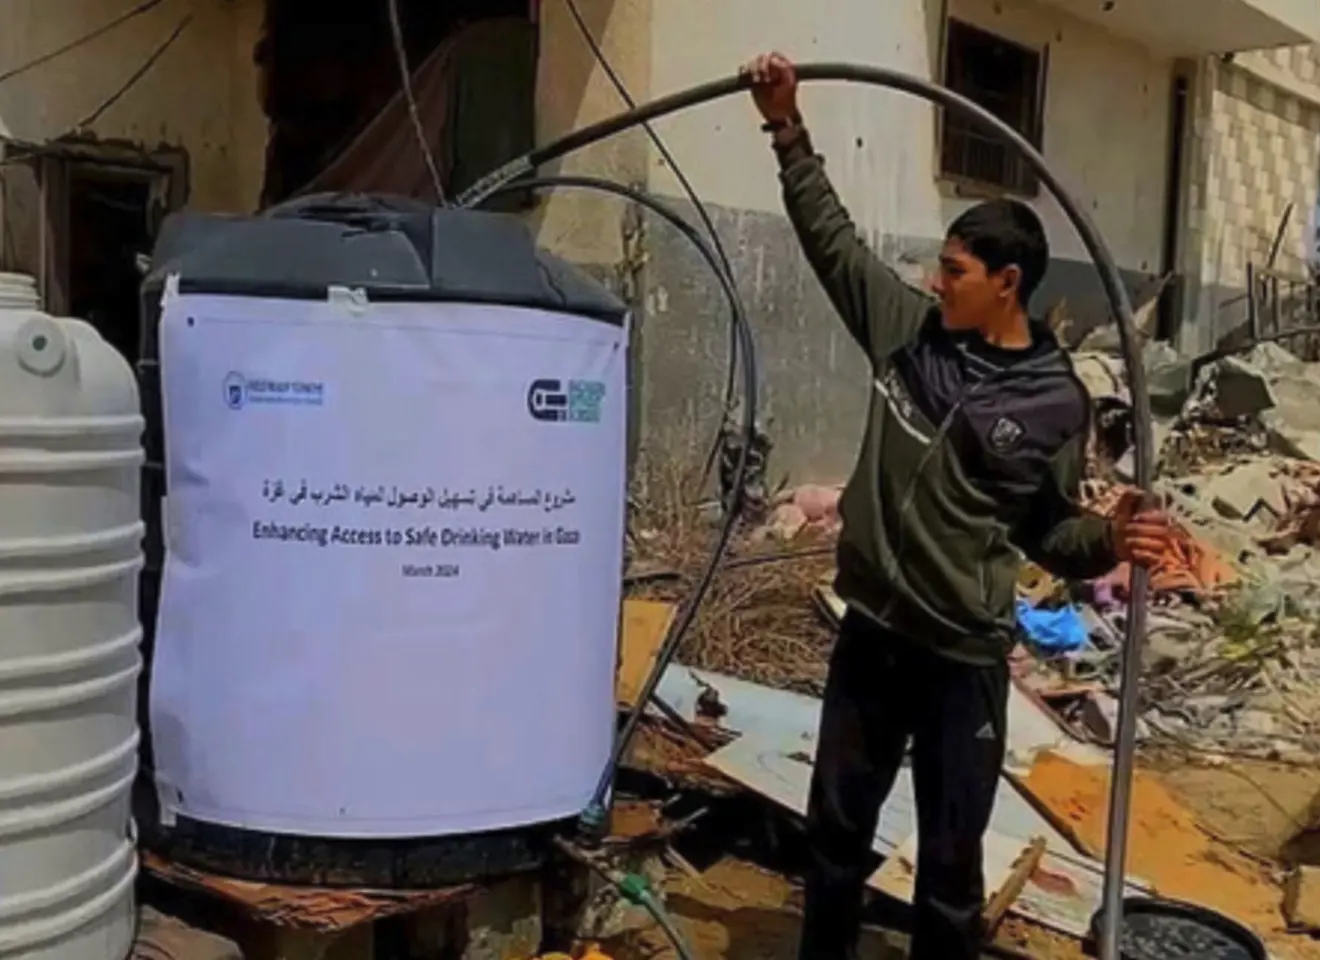 Mann i Gaza, jobber med vannpumpe